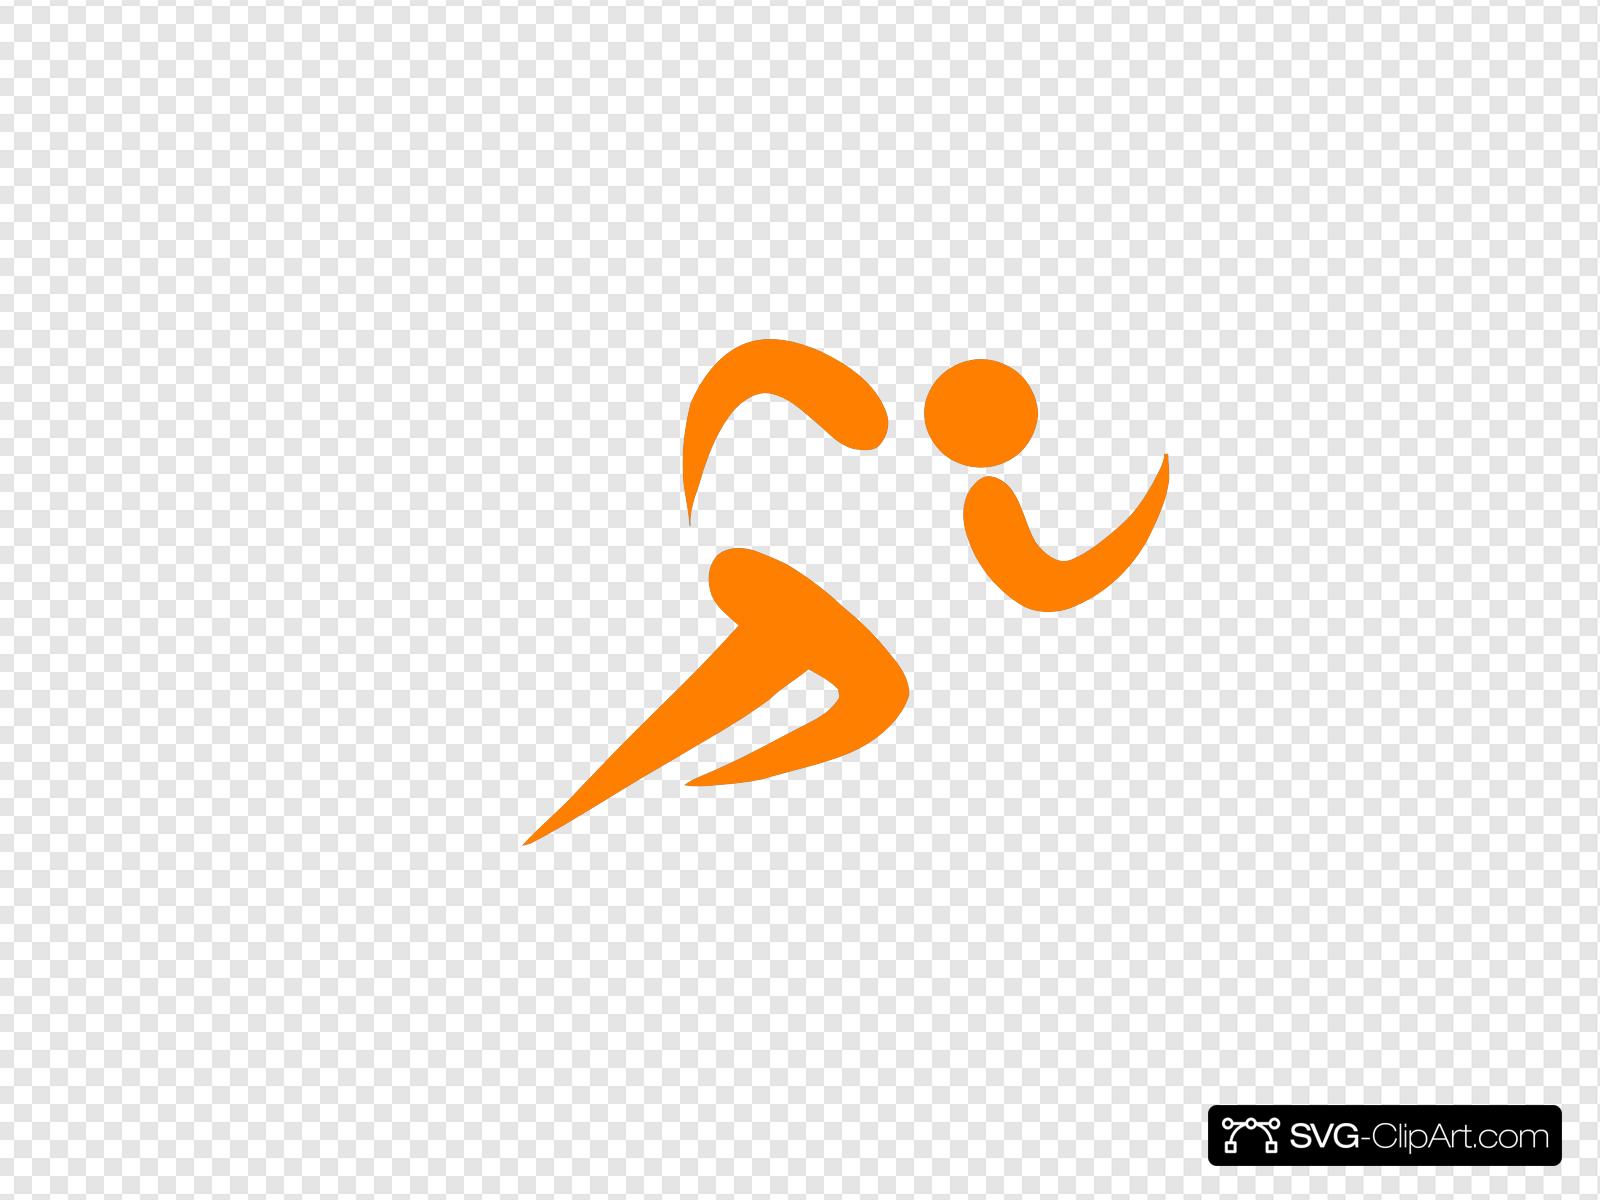 runner clipart orange